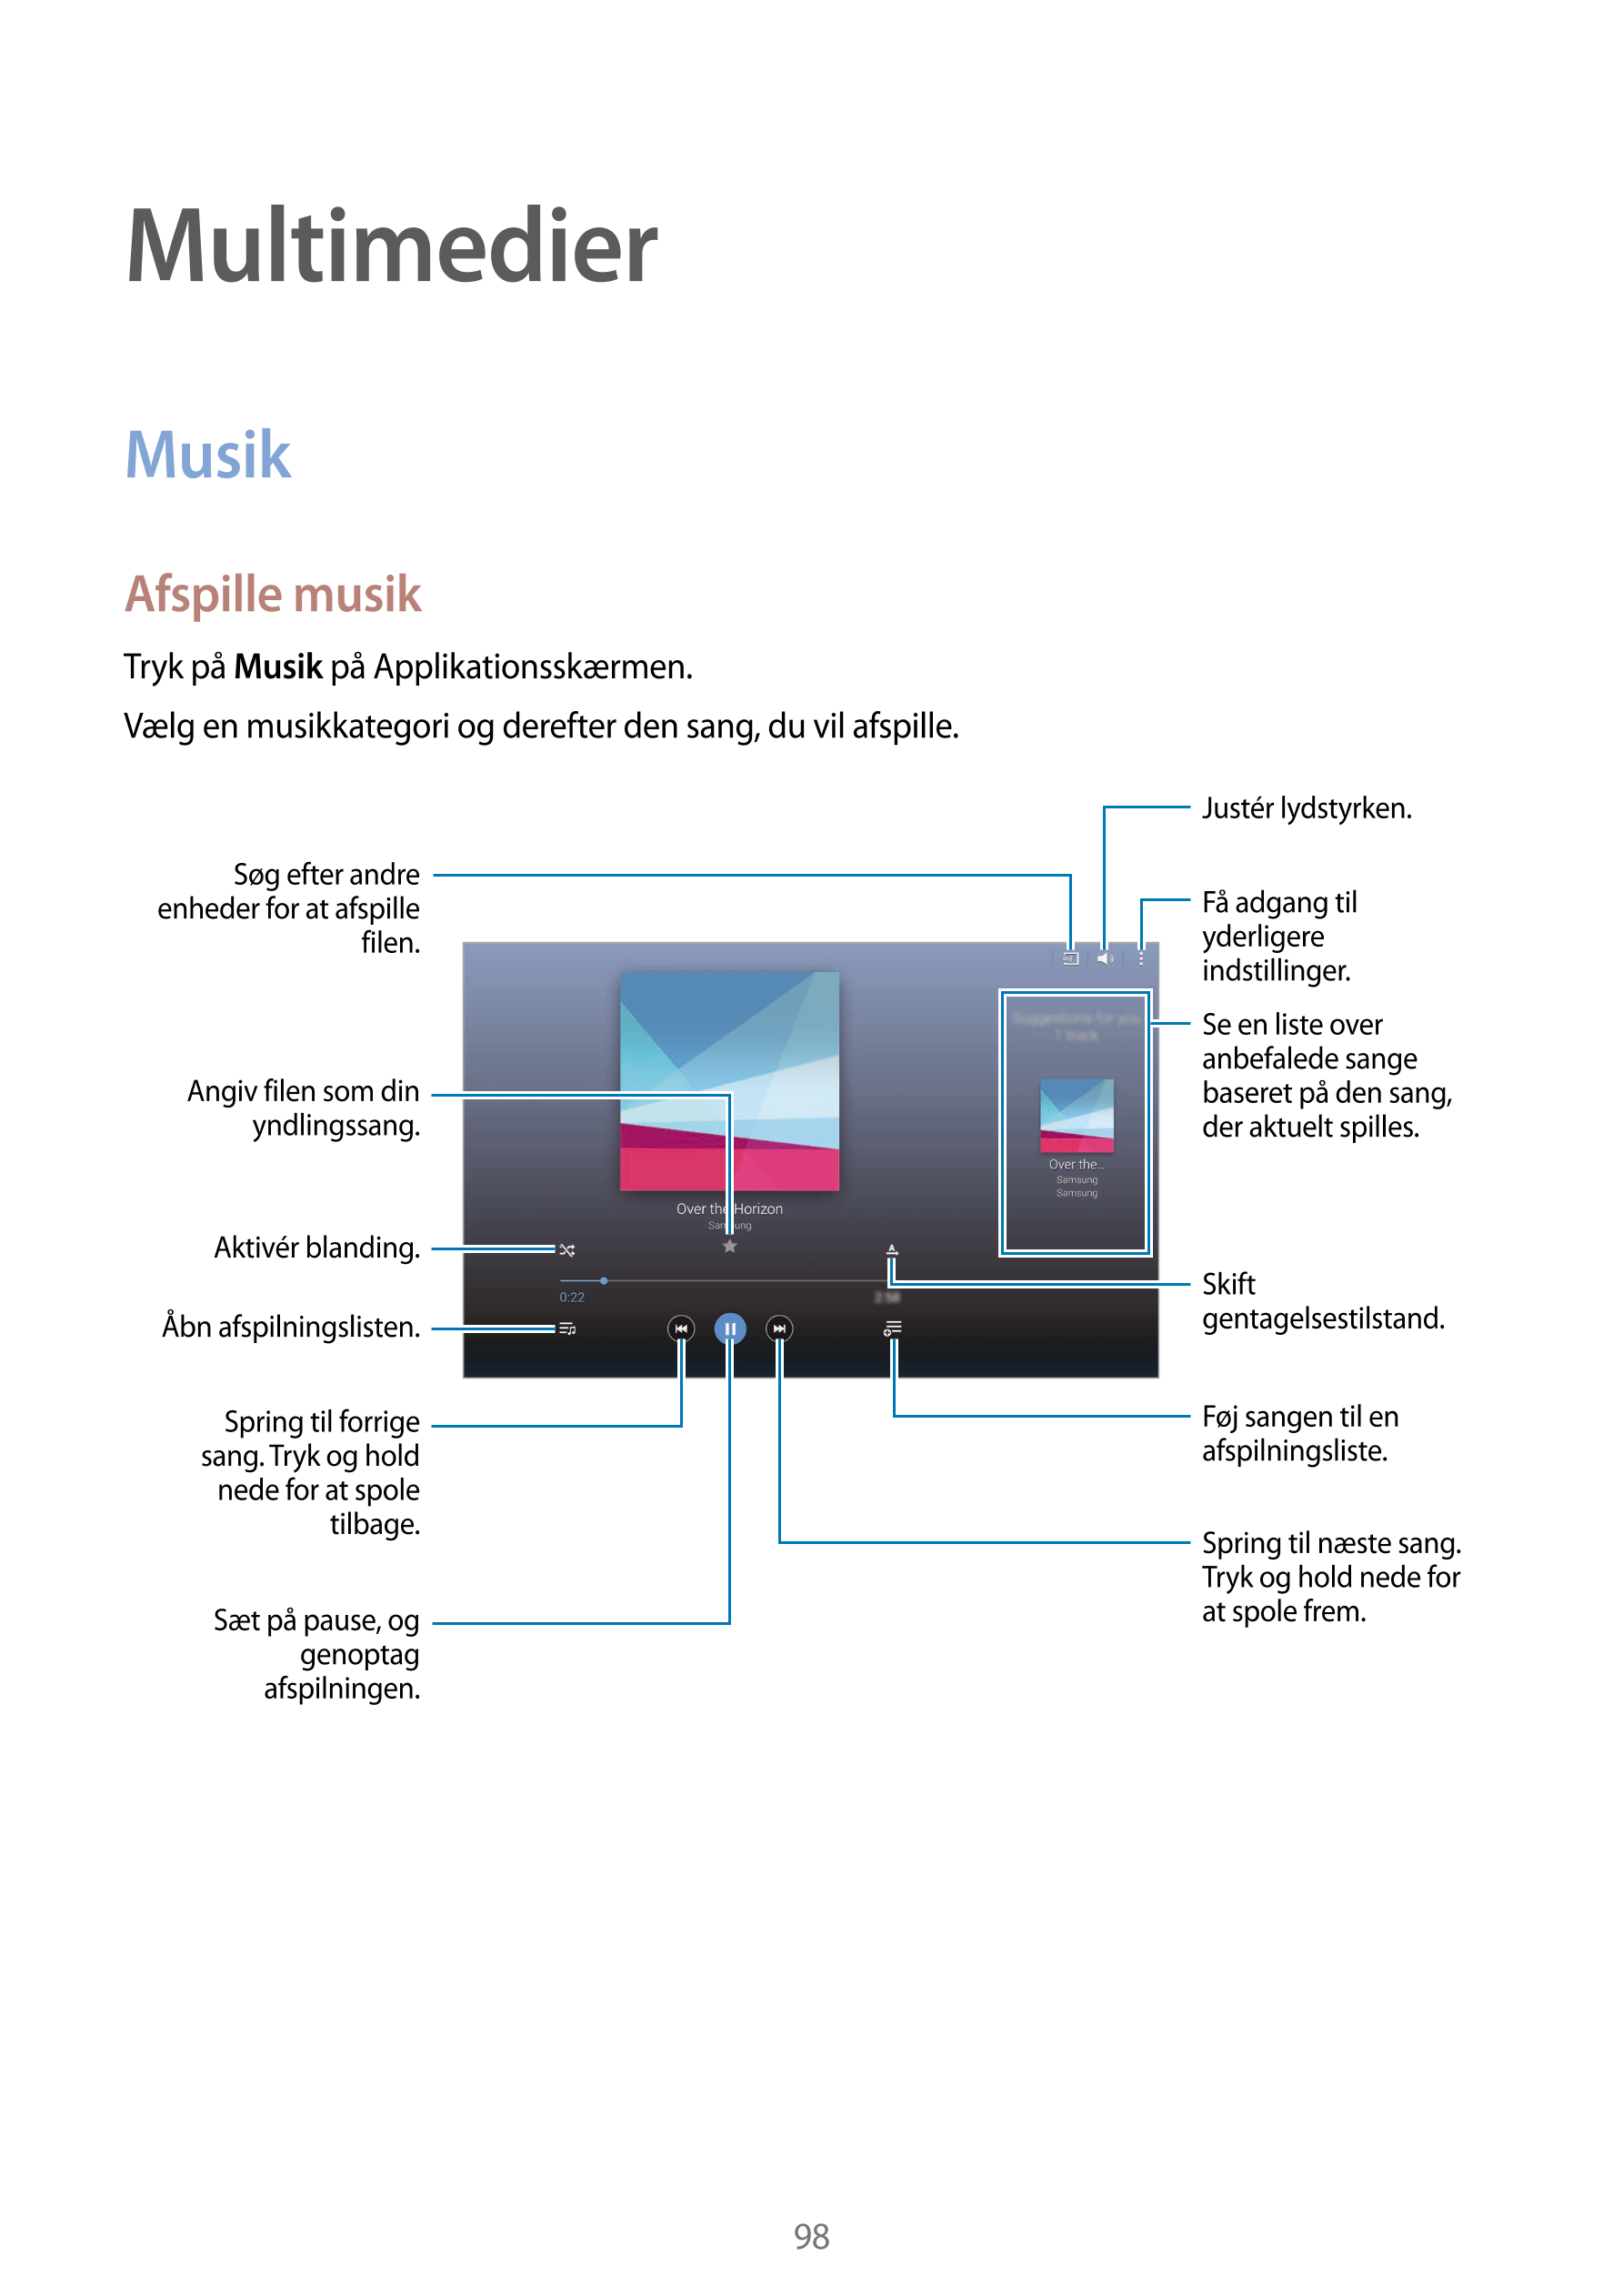 Multimedier
Musik
Afspille musik
Tryk på  Musik på Applikationsskærmen.
Vælg en musikkategori og derefter den sang, du vil afspi